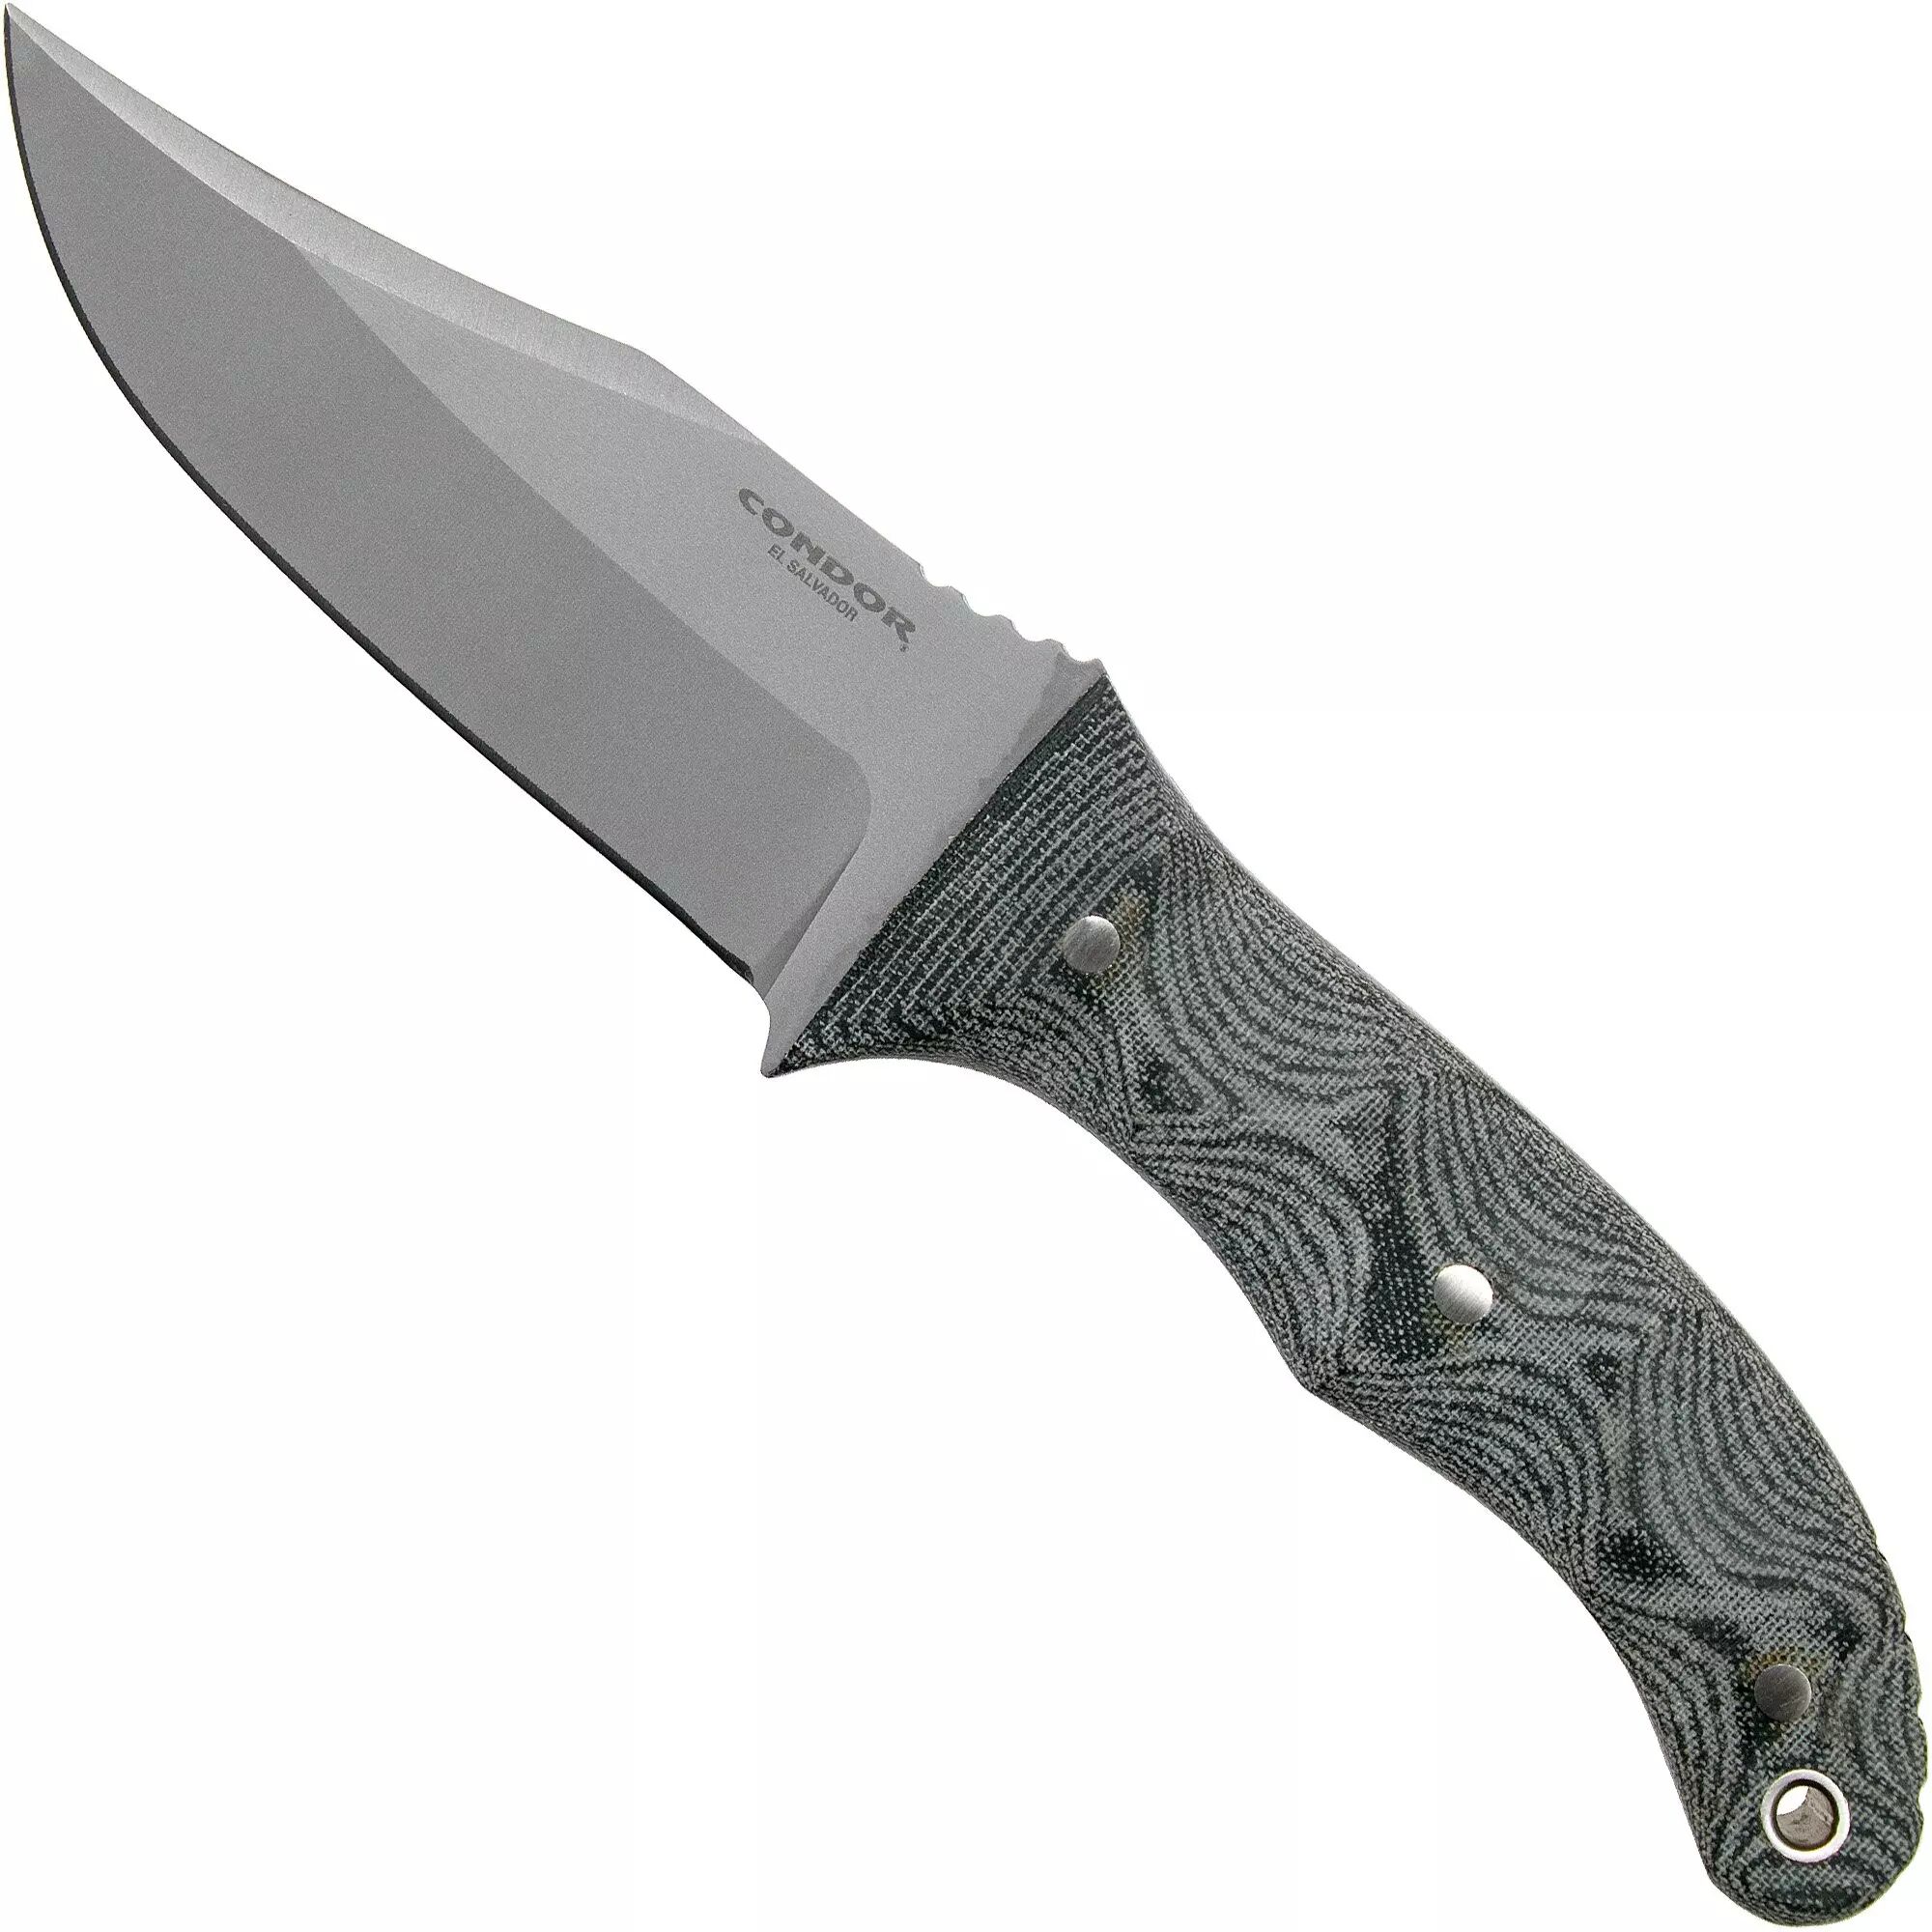 Condor Little Bowie Knife 1821-4.5HC Outdoormesser 61726